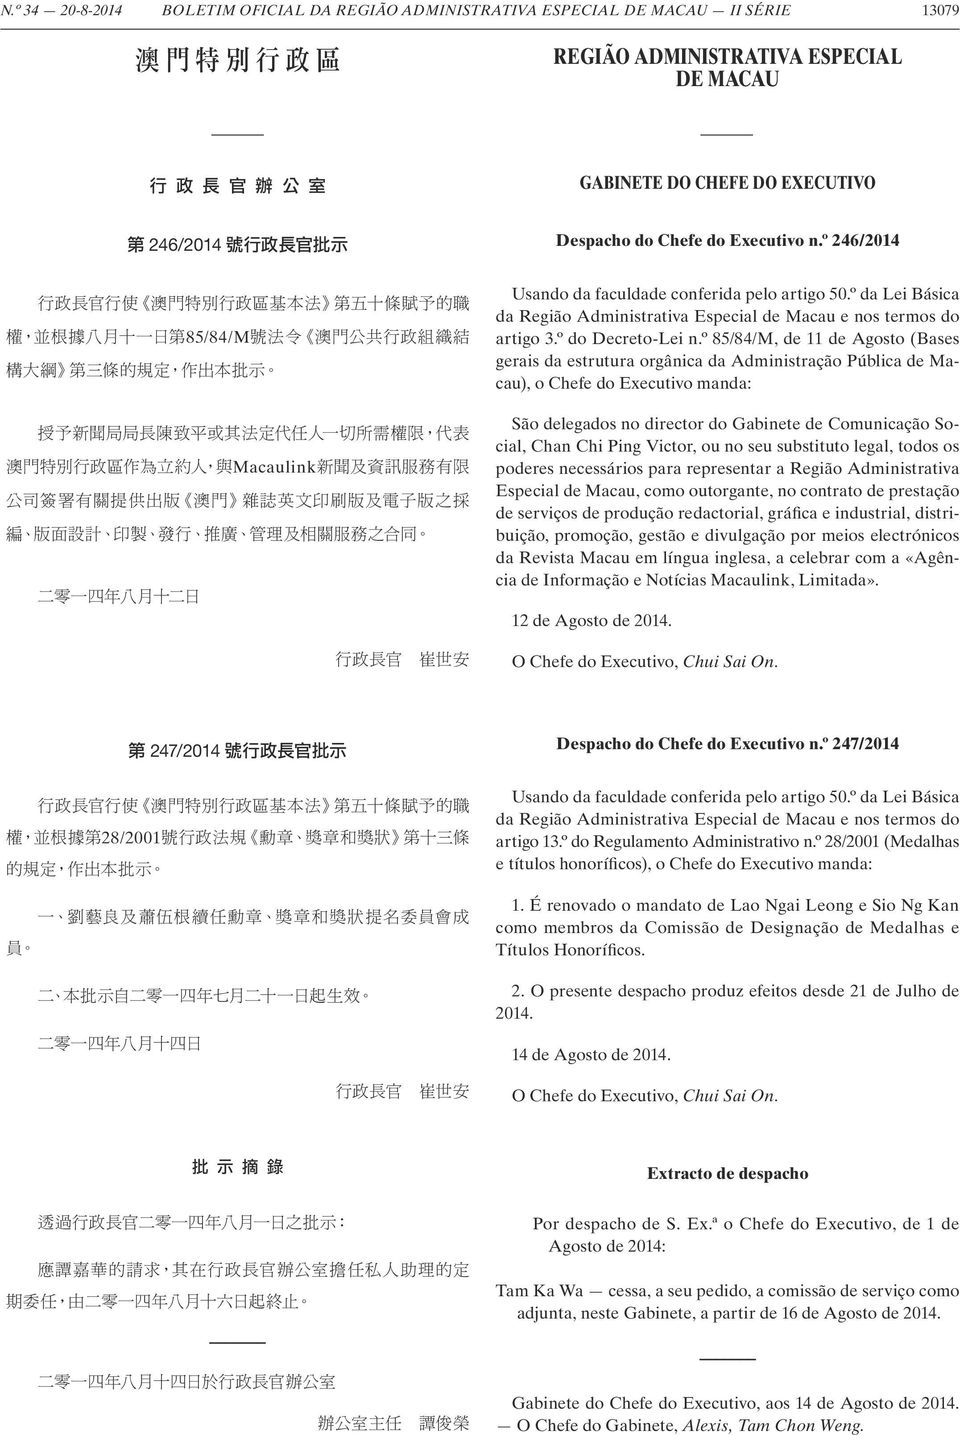 º da Lei Básica da Região Administrativa Especial de Macau e nos termos do artigo 3.º do Decreto-Lei n.